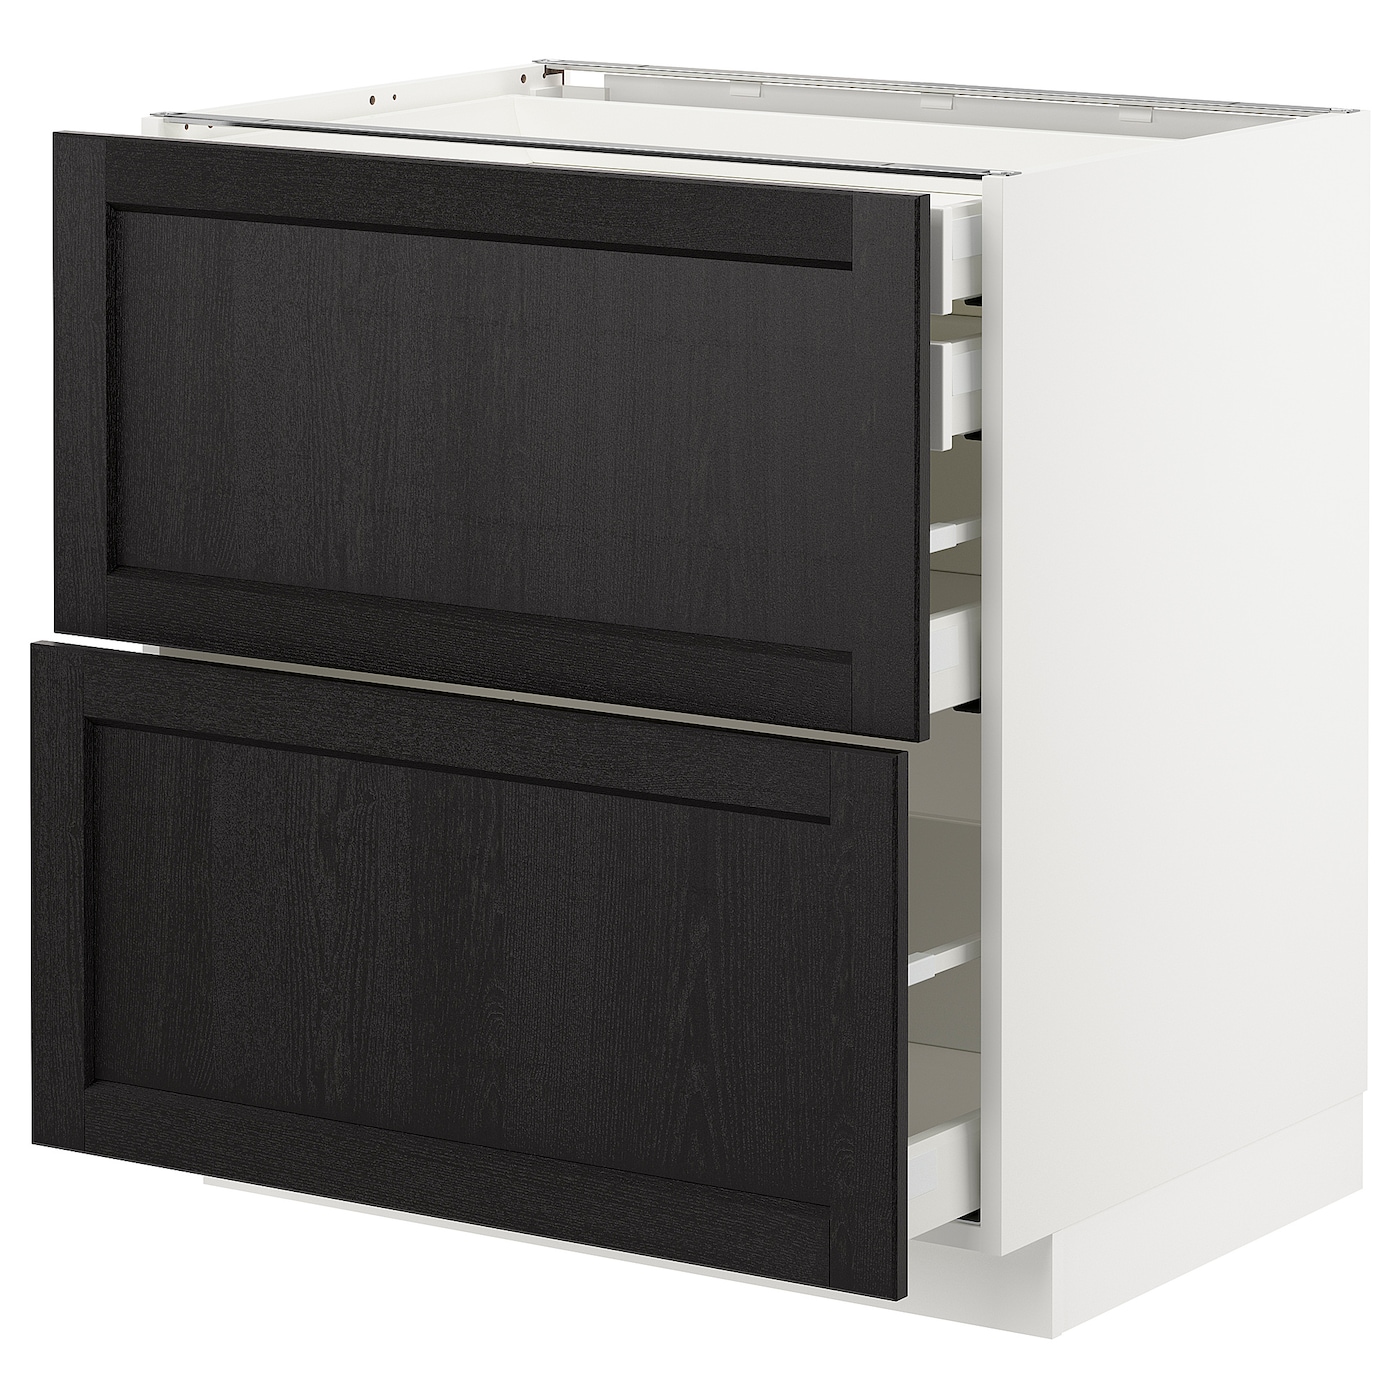 Напольный кухонный шкаф  - IKEA METOD MAXIMERA, 88x61,9x80см, белый/черный, МЕТОД МАКСИМЕРА ИКЕА